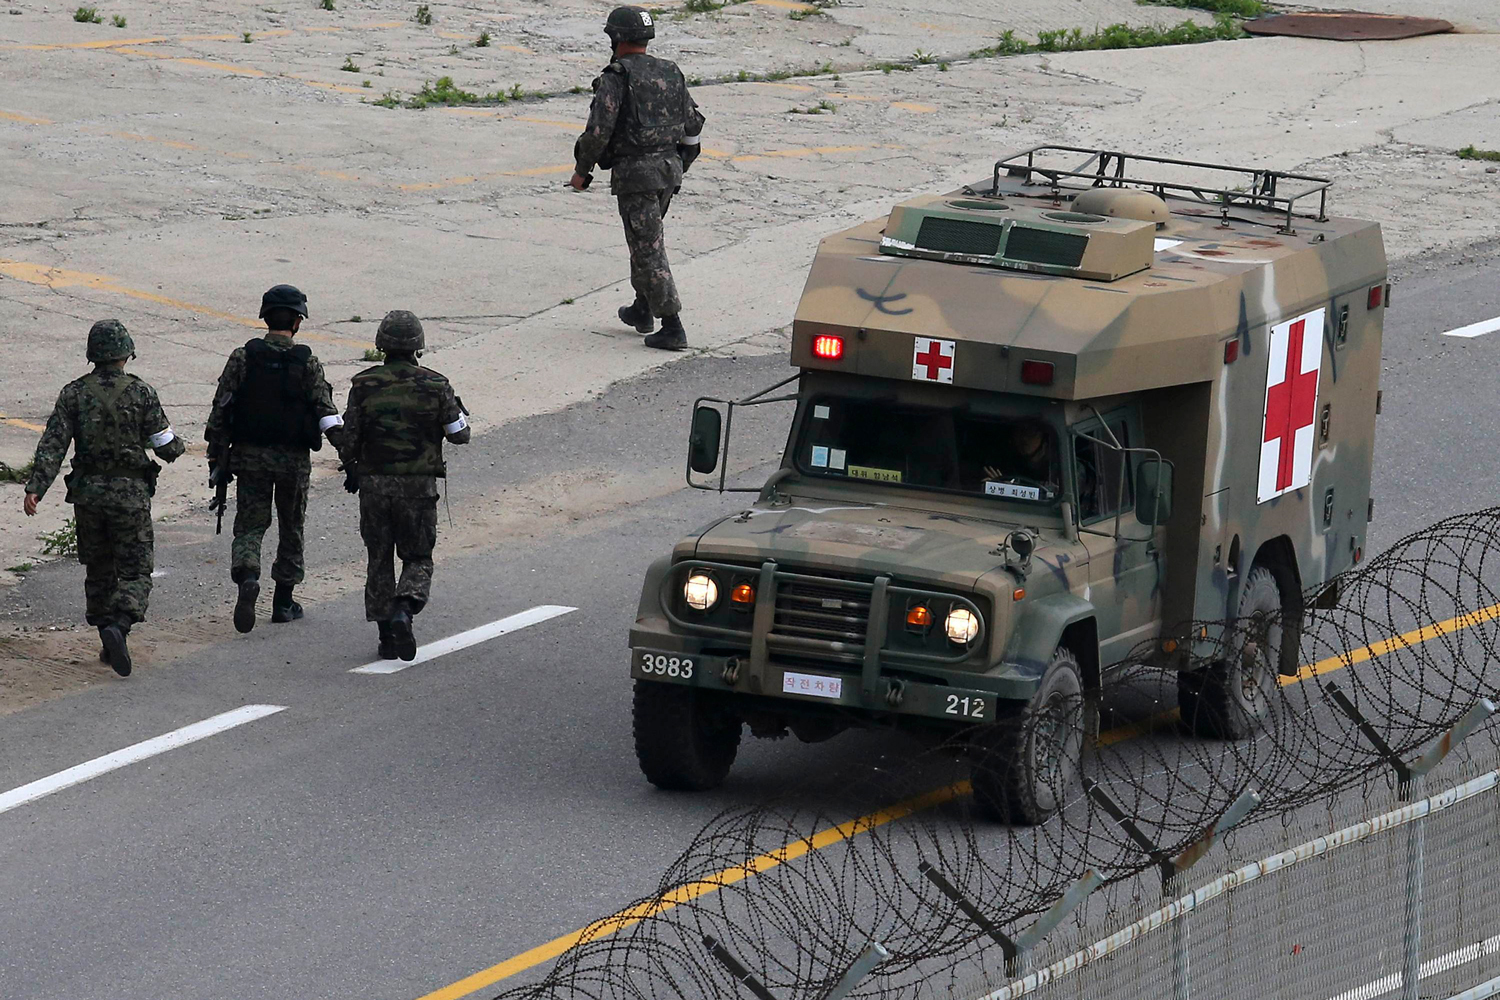 Capturan al soldado que mató a 5 compañeros en un cuartel de Corea del Sur